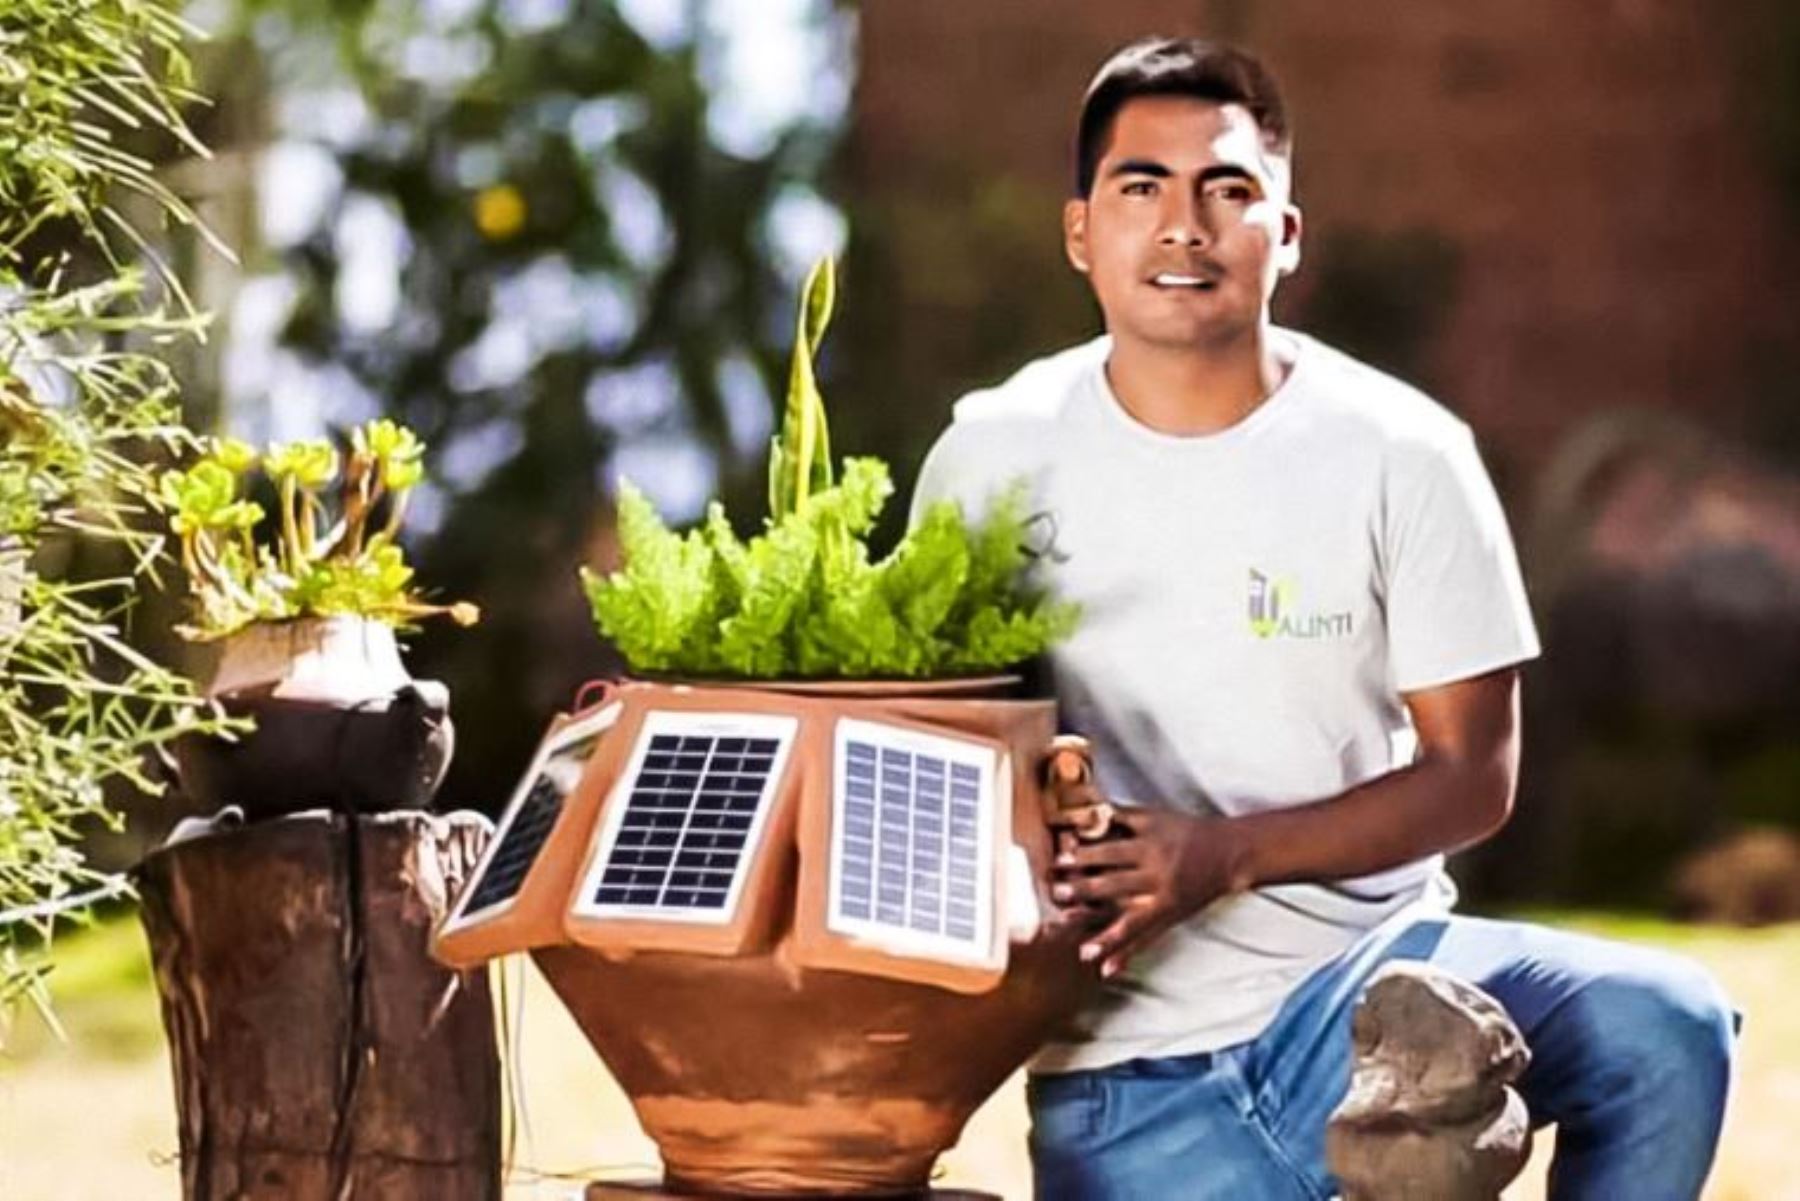 Huantino de 31 años, Hernán Asto Cabezas, ha creado energía electrica a base de plantas para hogares, y próximamente para el alumbrado público.